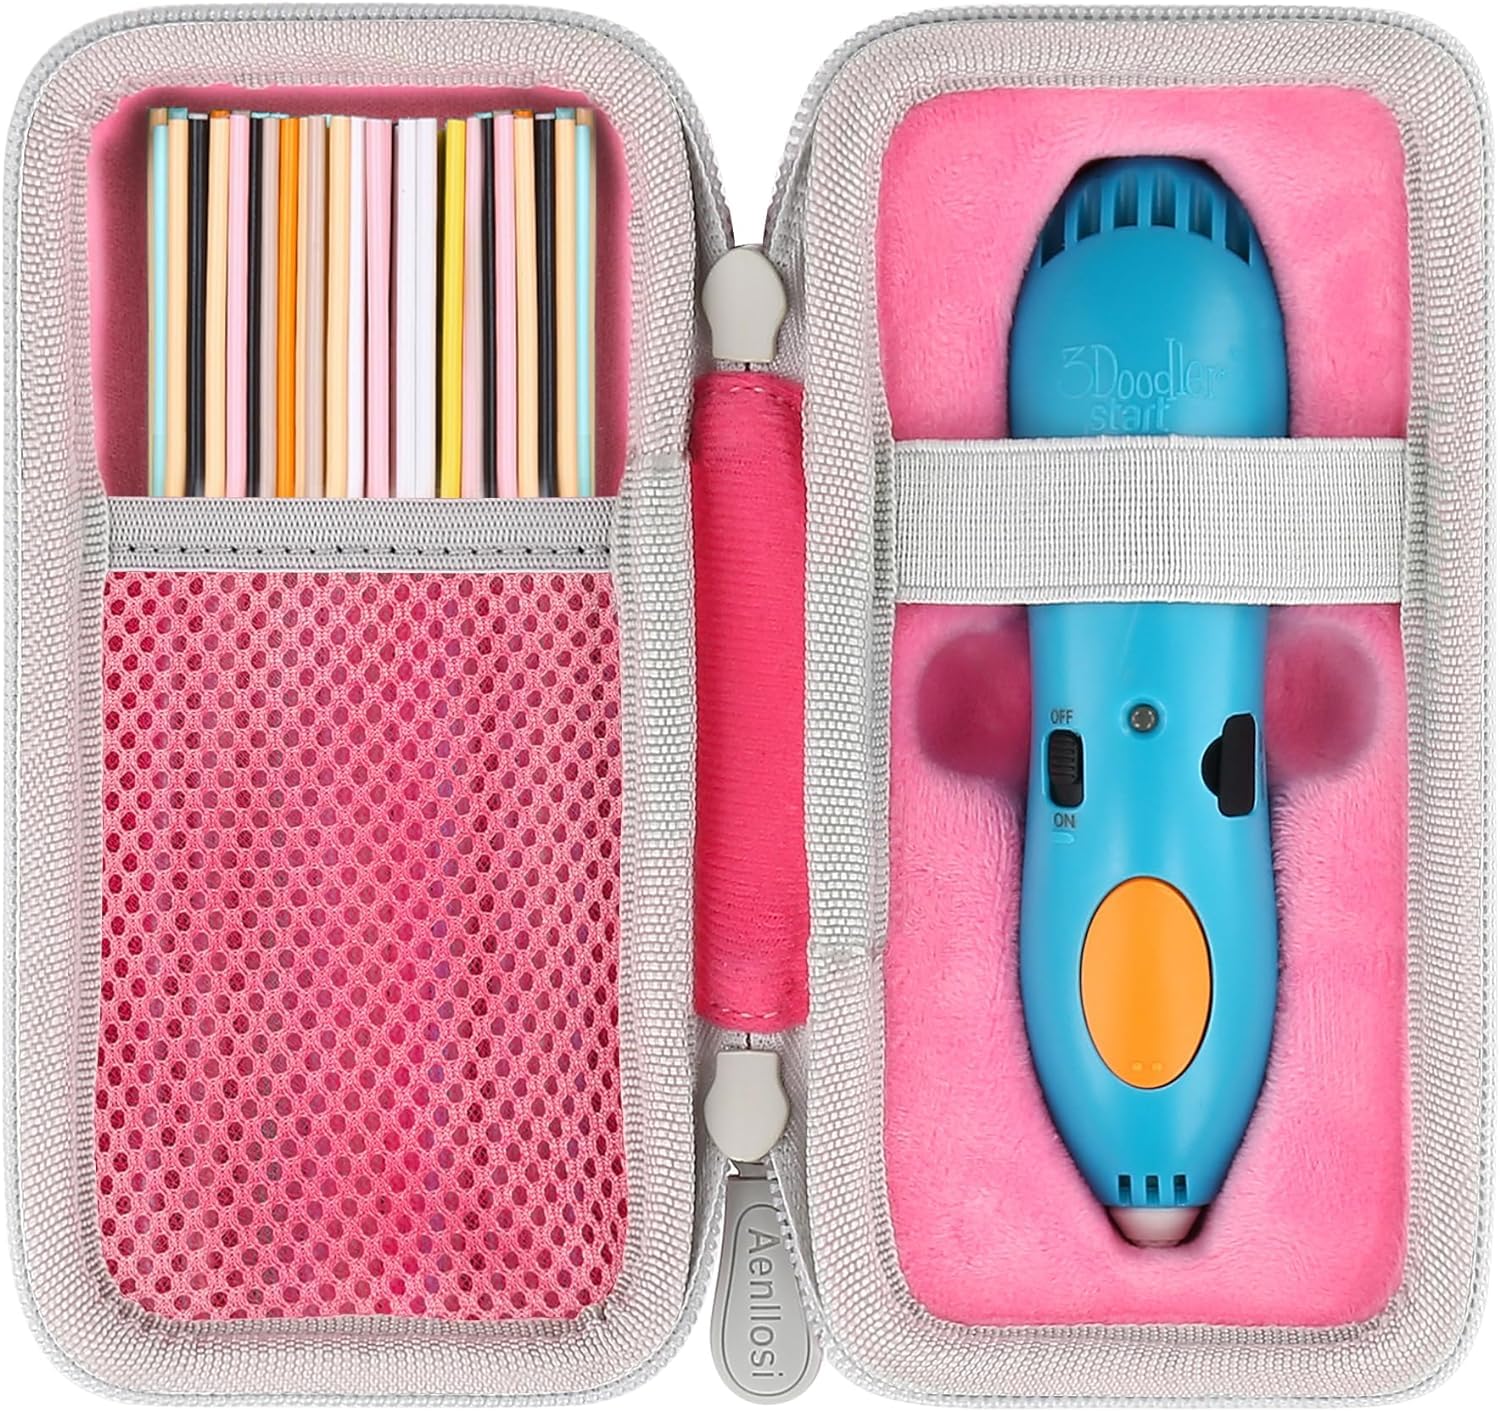 （ケースのみ）3Doodler Start プレゼント 子供 おもちゃ 知育 玩具 アートペン フィラメン ピンク 専用収納ケース-Aenllosi